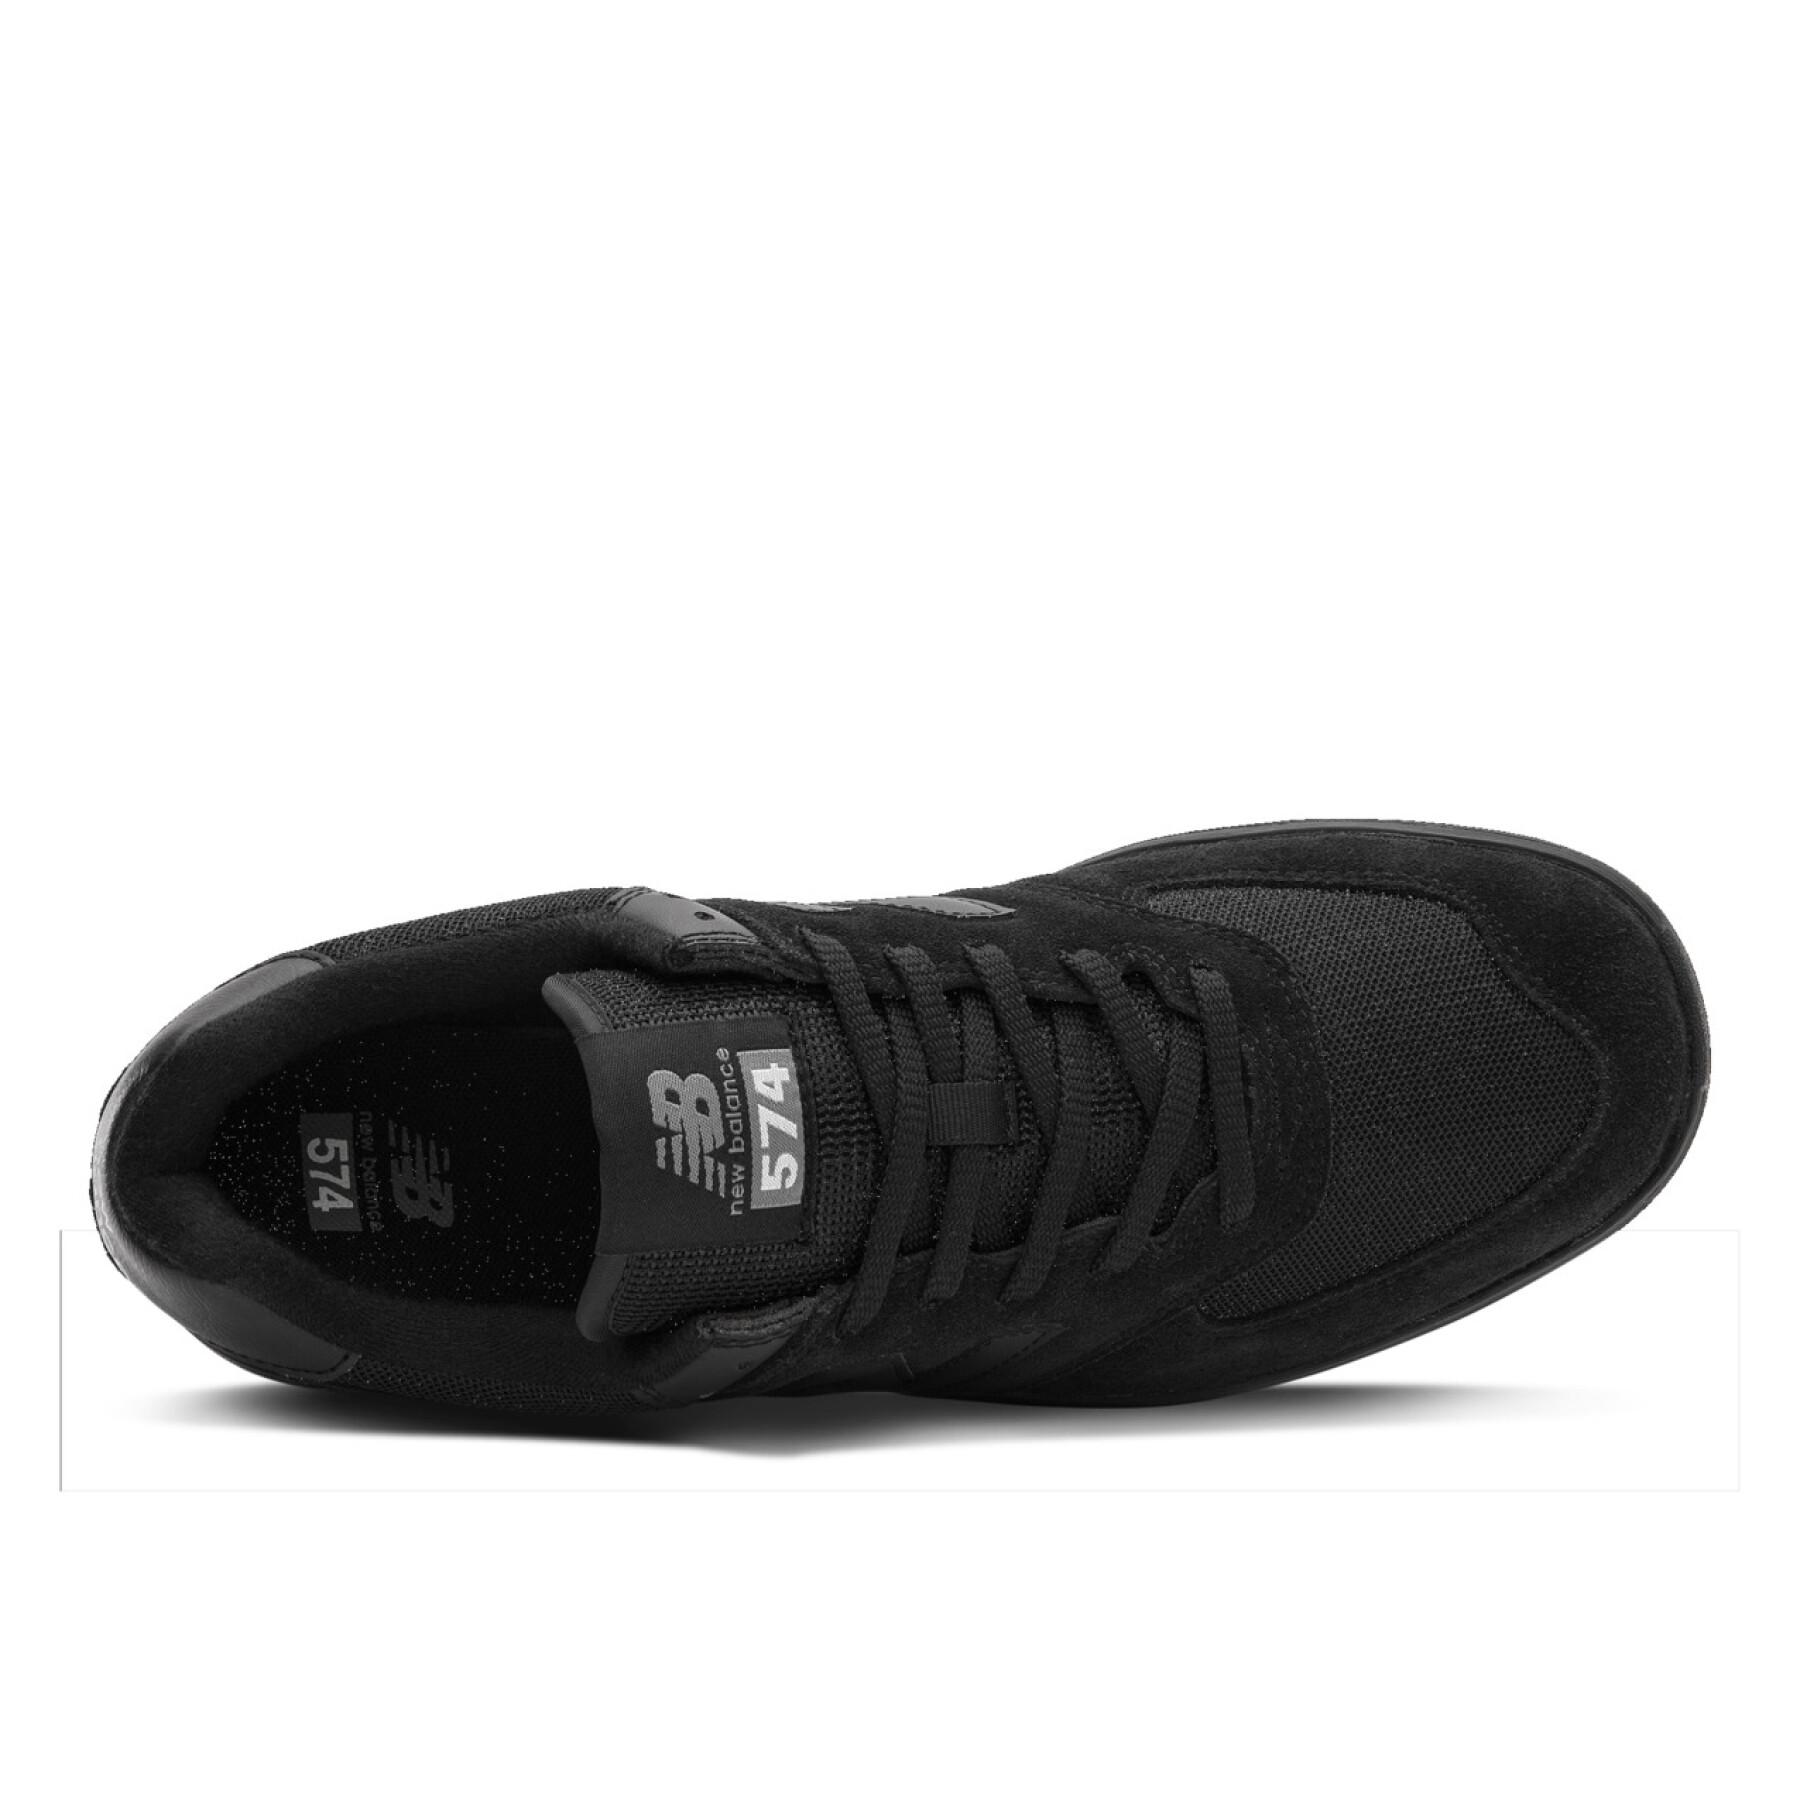 Chaussures New Balance am574